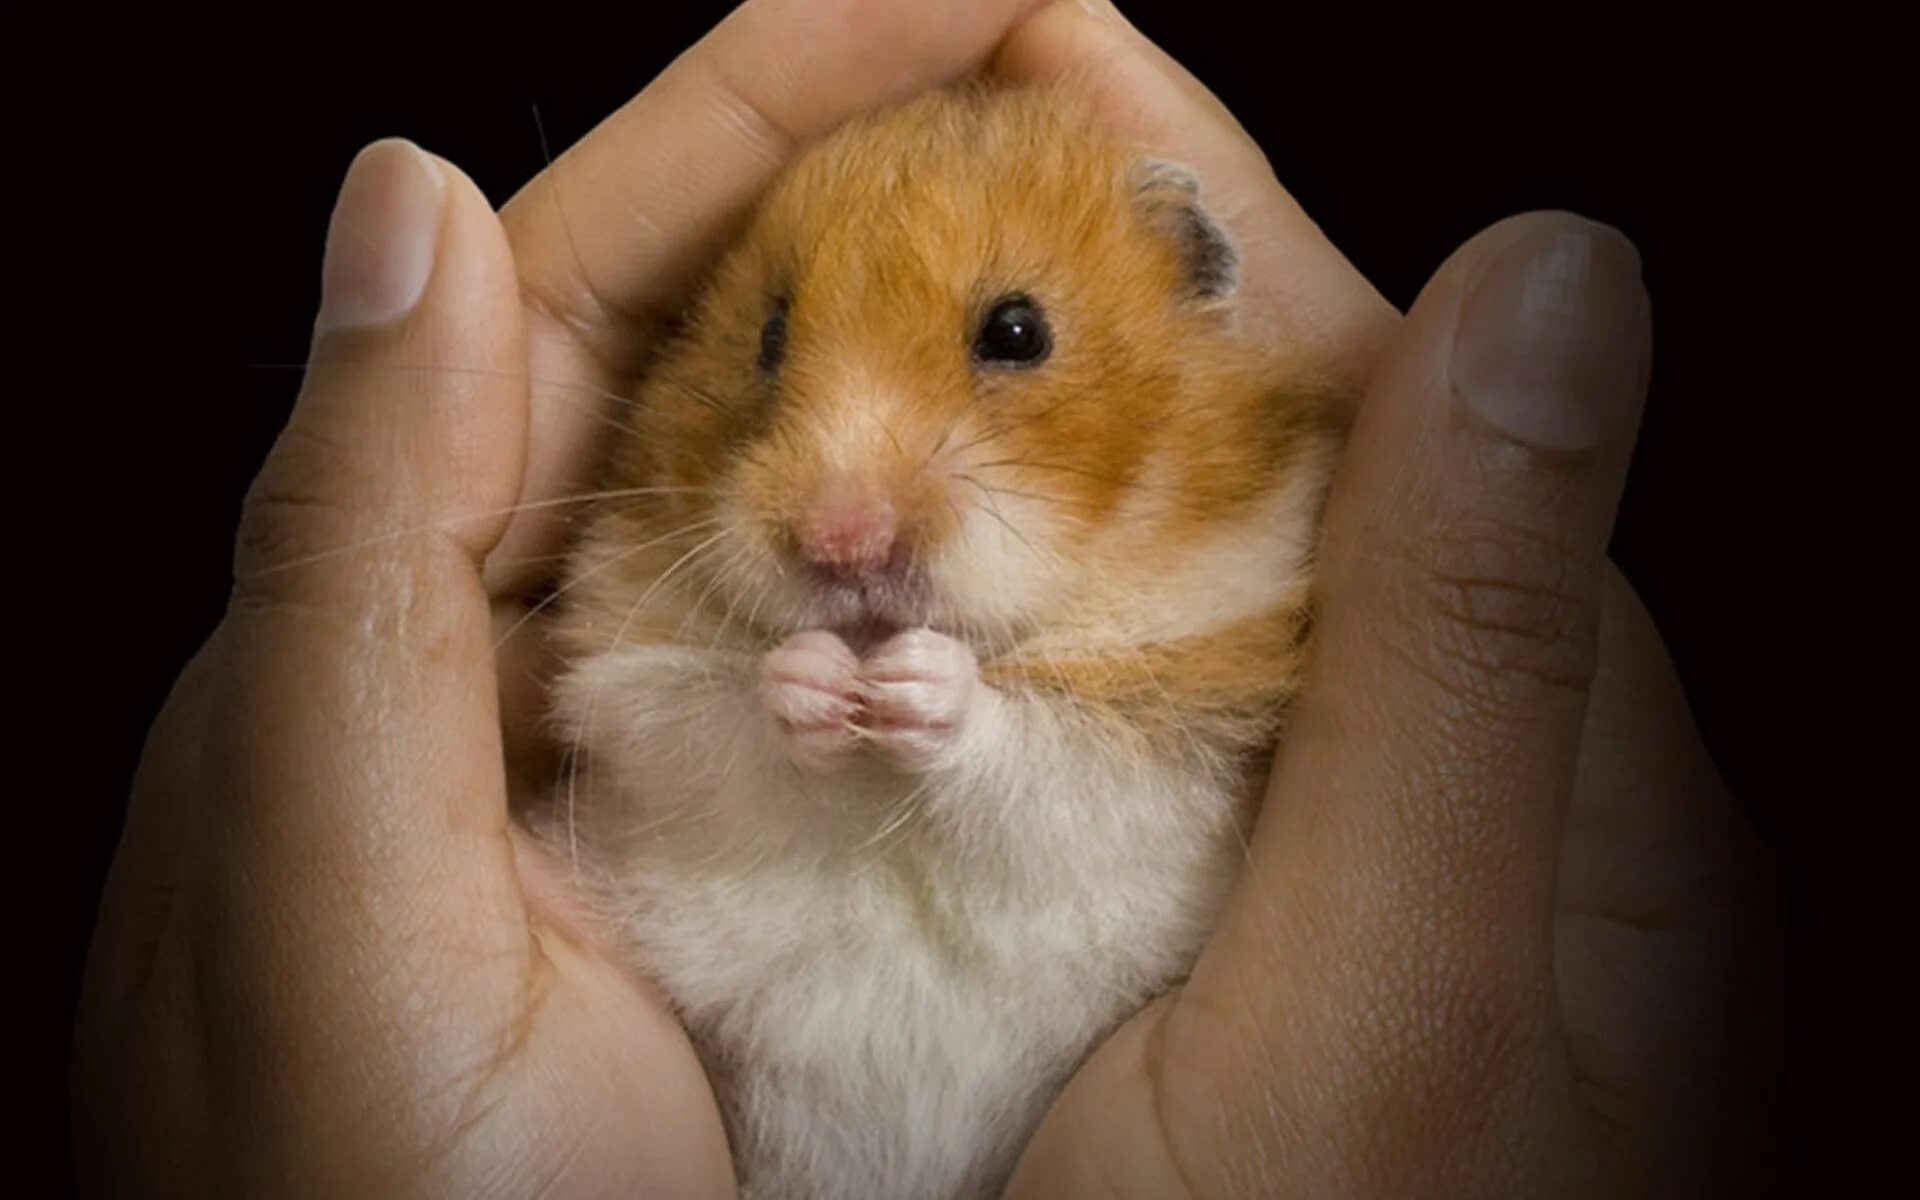 Sad hamster violin hamster. Джунгарский хомячок рыжий. Хомяк сирийский. Рыжий хомяк джунгарик. Джунгарский и сирийский хомяк.